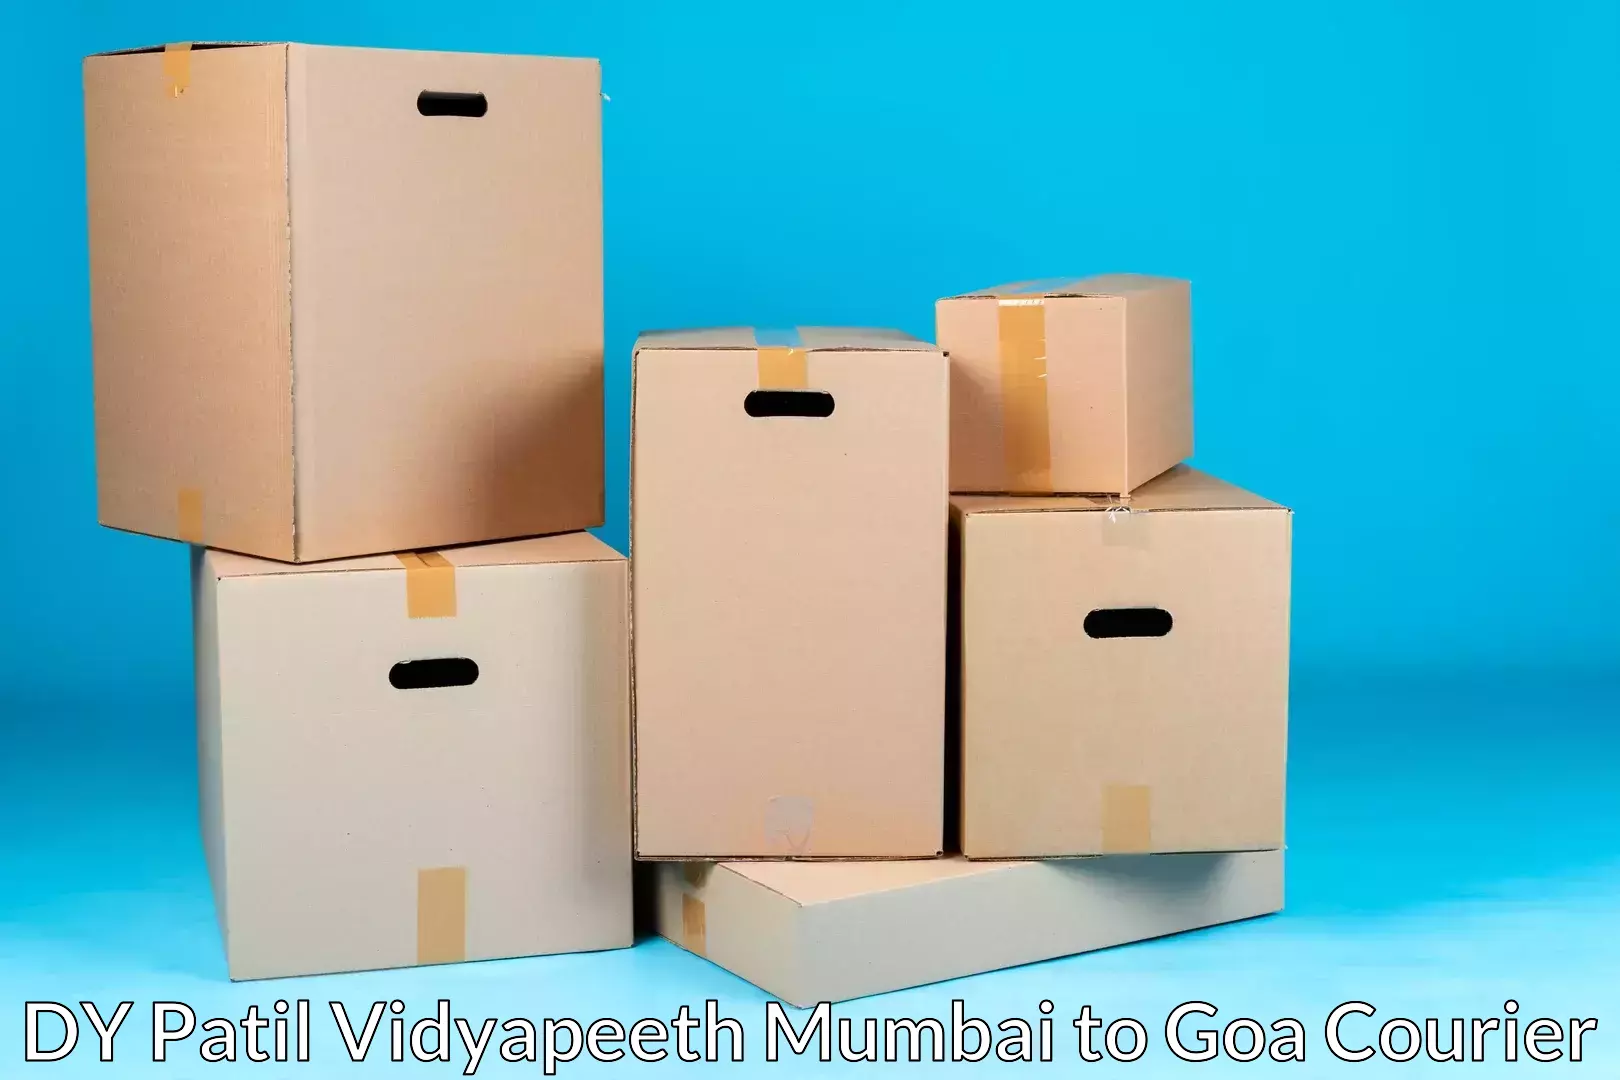 Home goods moving company DY Patil Vidyapeeth Mumbai to Canacona